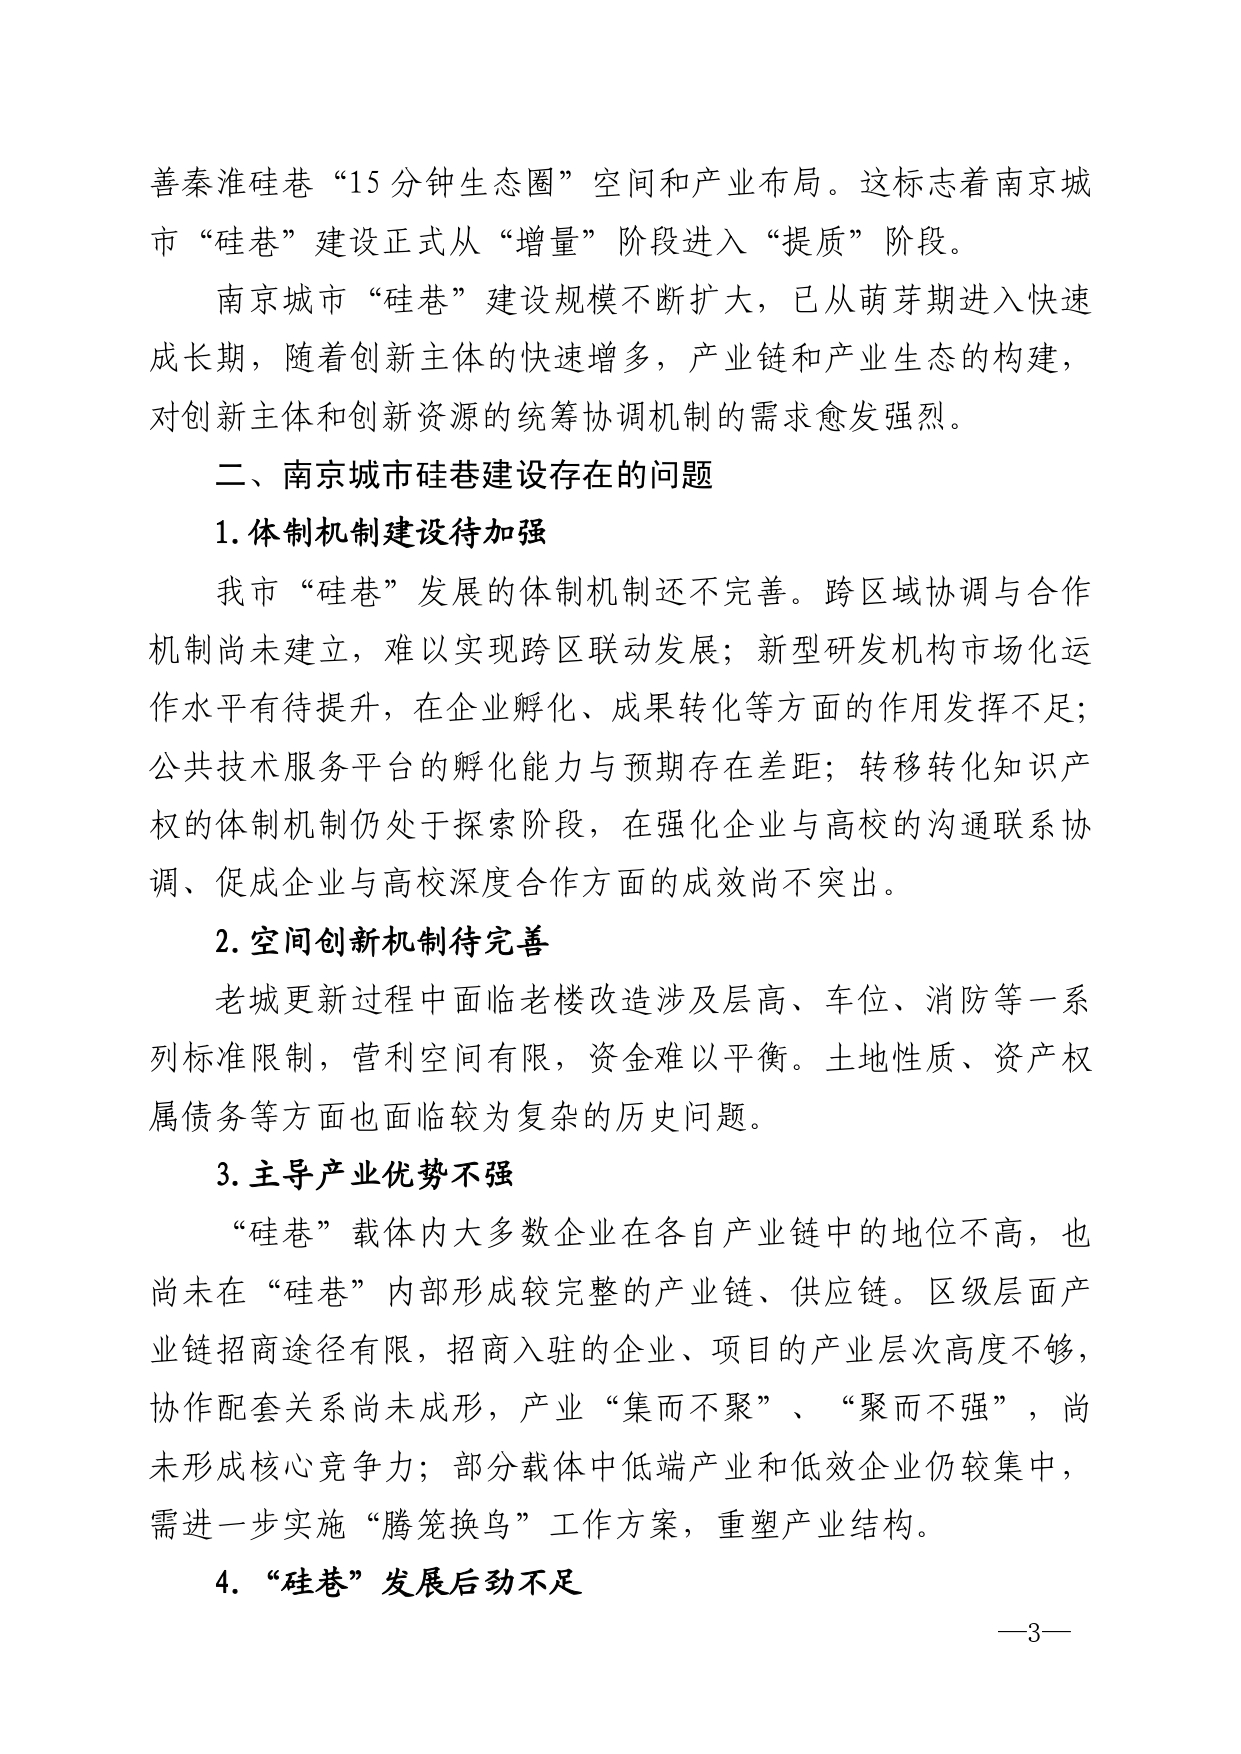 2021年第6期（关于南京城市硅巷发展的若干建议）-印刷版_page-0003.jpg